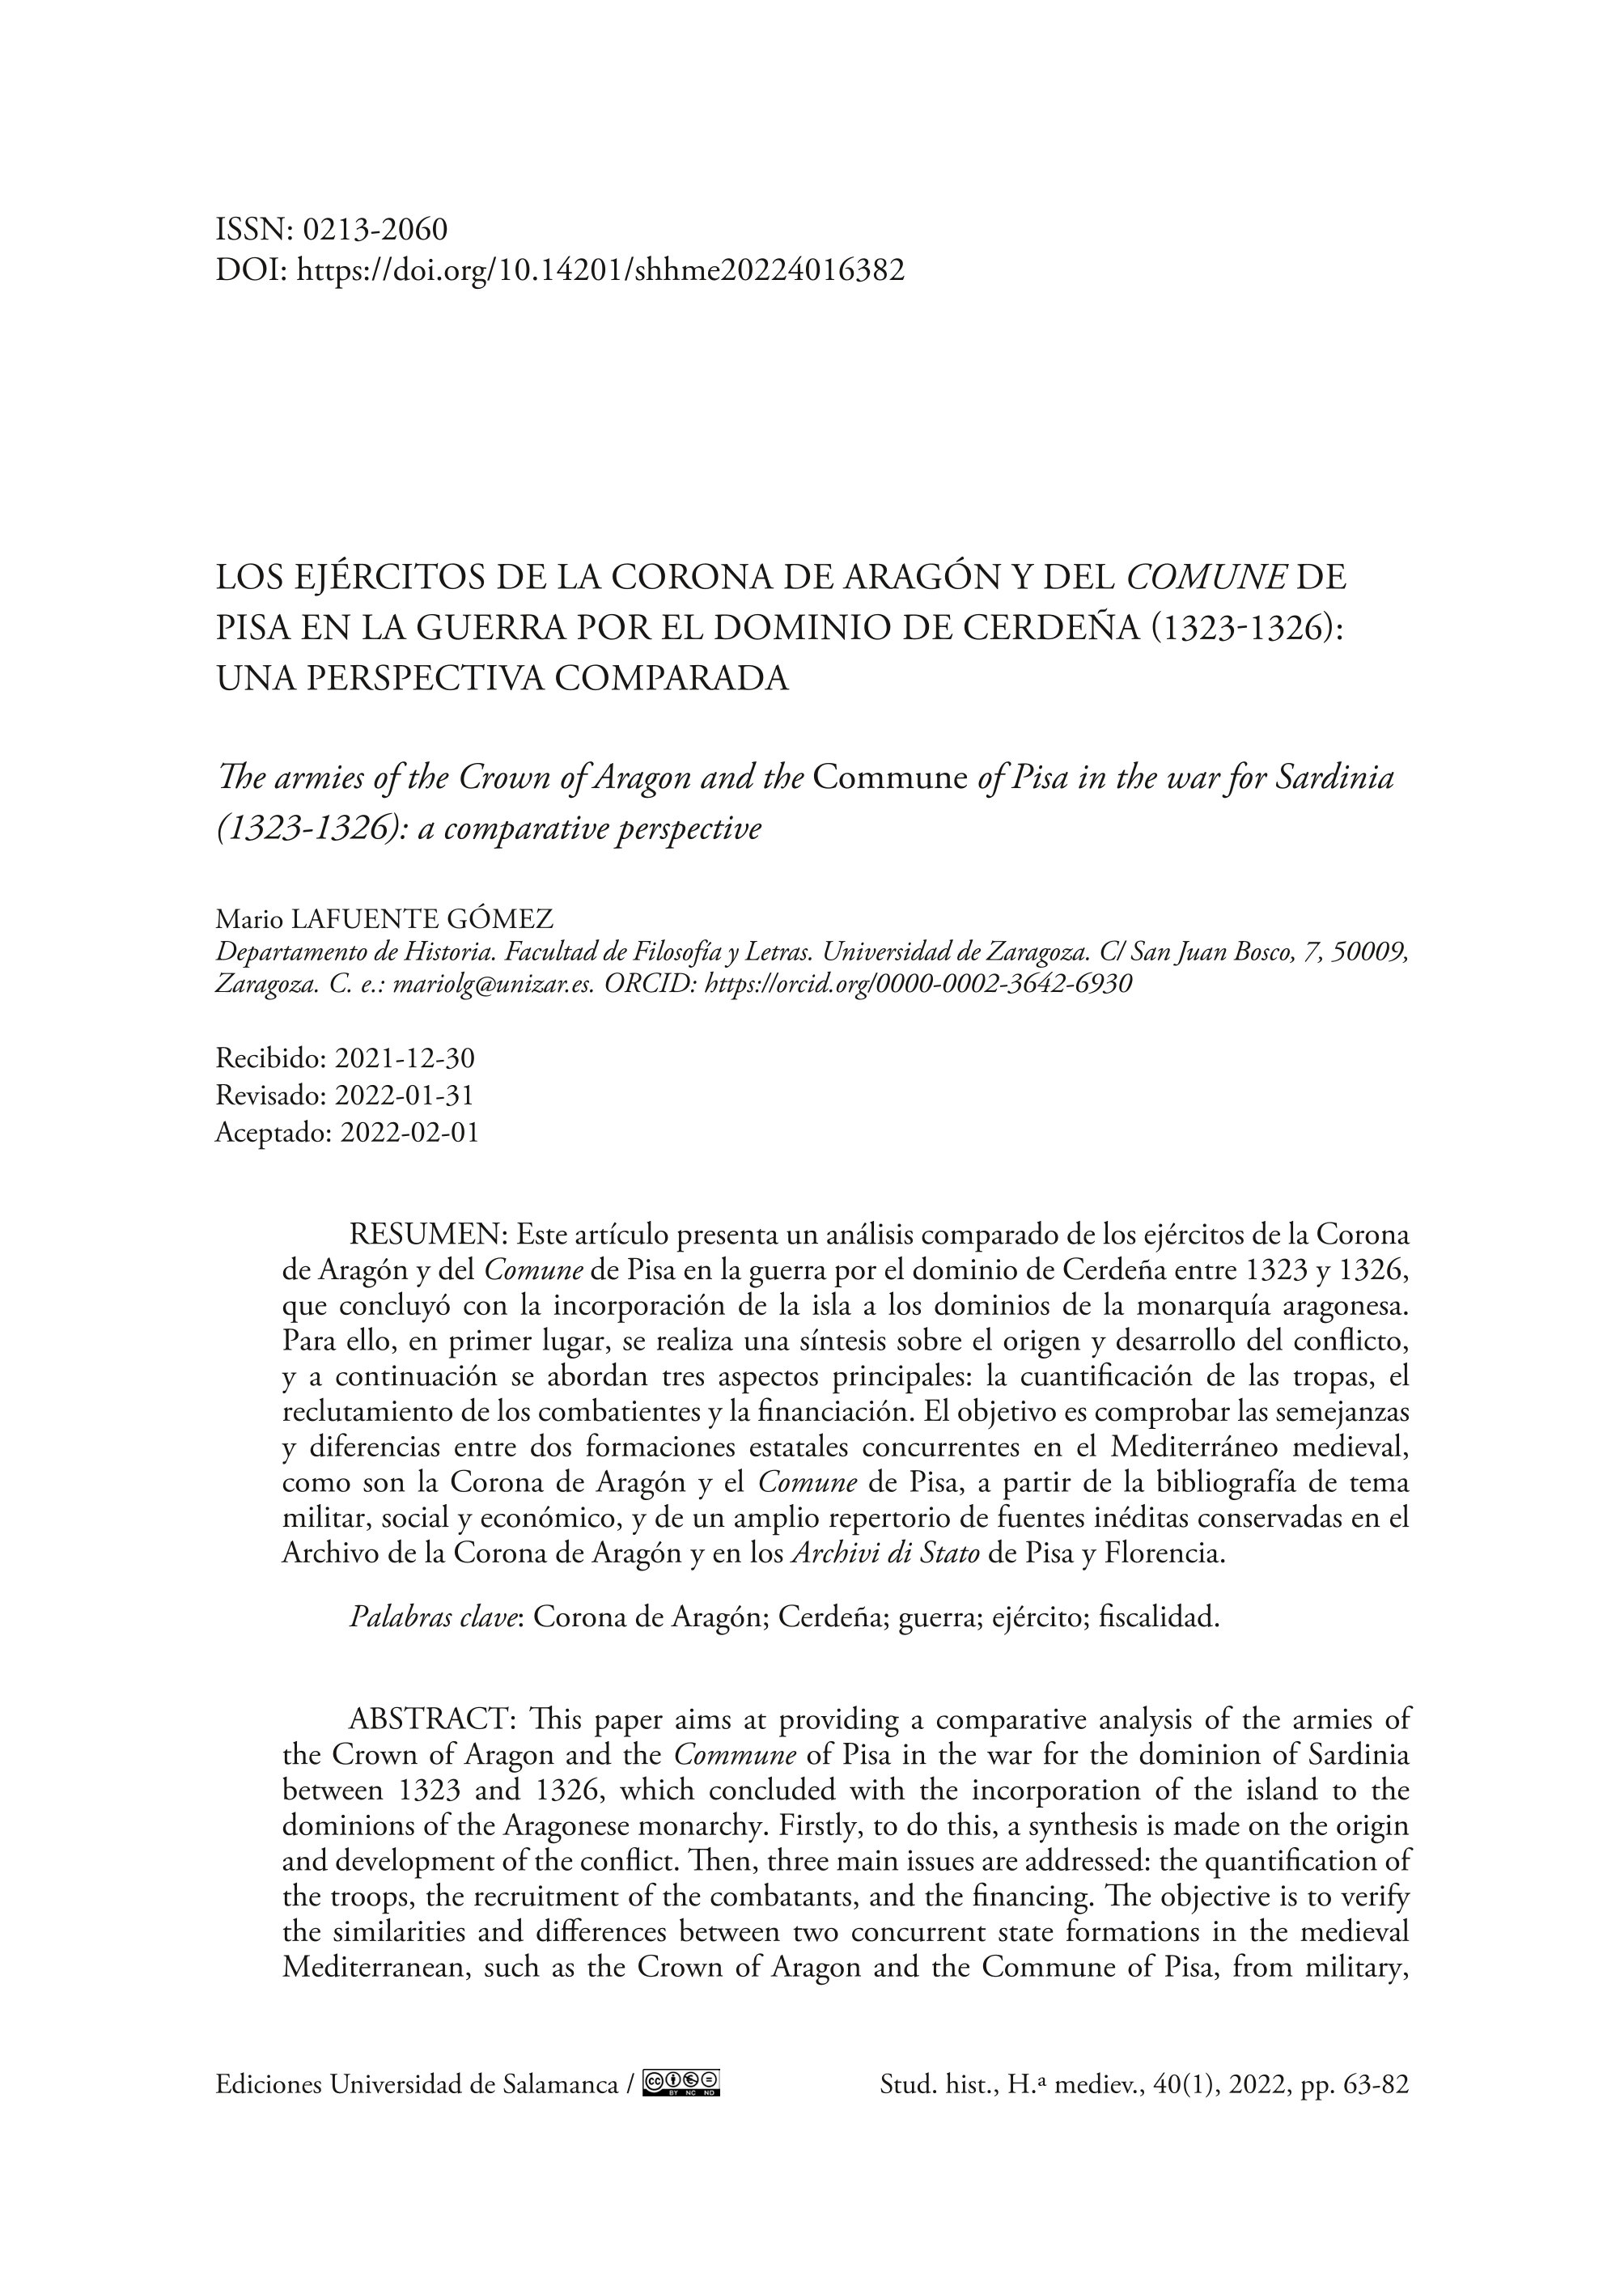 Los ejércitos de la Corona de Aragón y del Comune de Pisa en la guerra por el dominio de Cerdeña (1323-1326): una perspectiva comparada